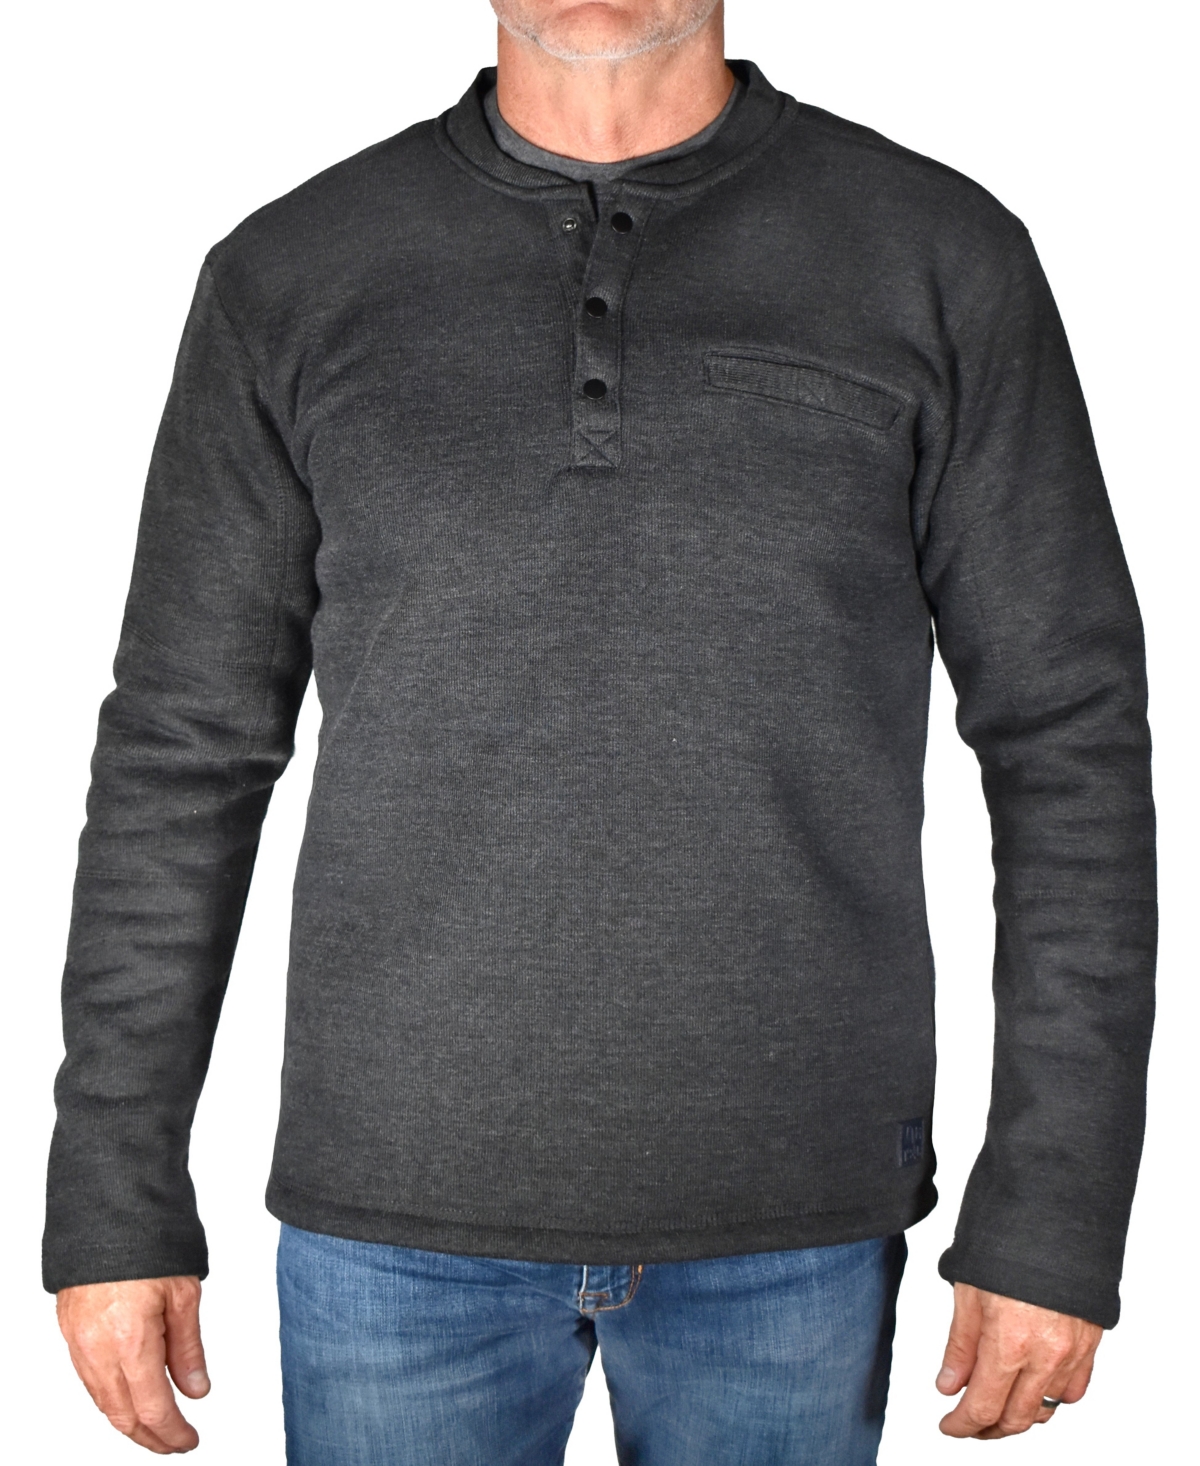 Men's Fleece Lined Rib Henley T-shirt - Dark Navy, Navy